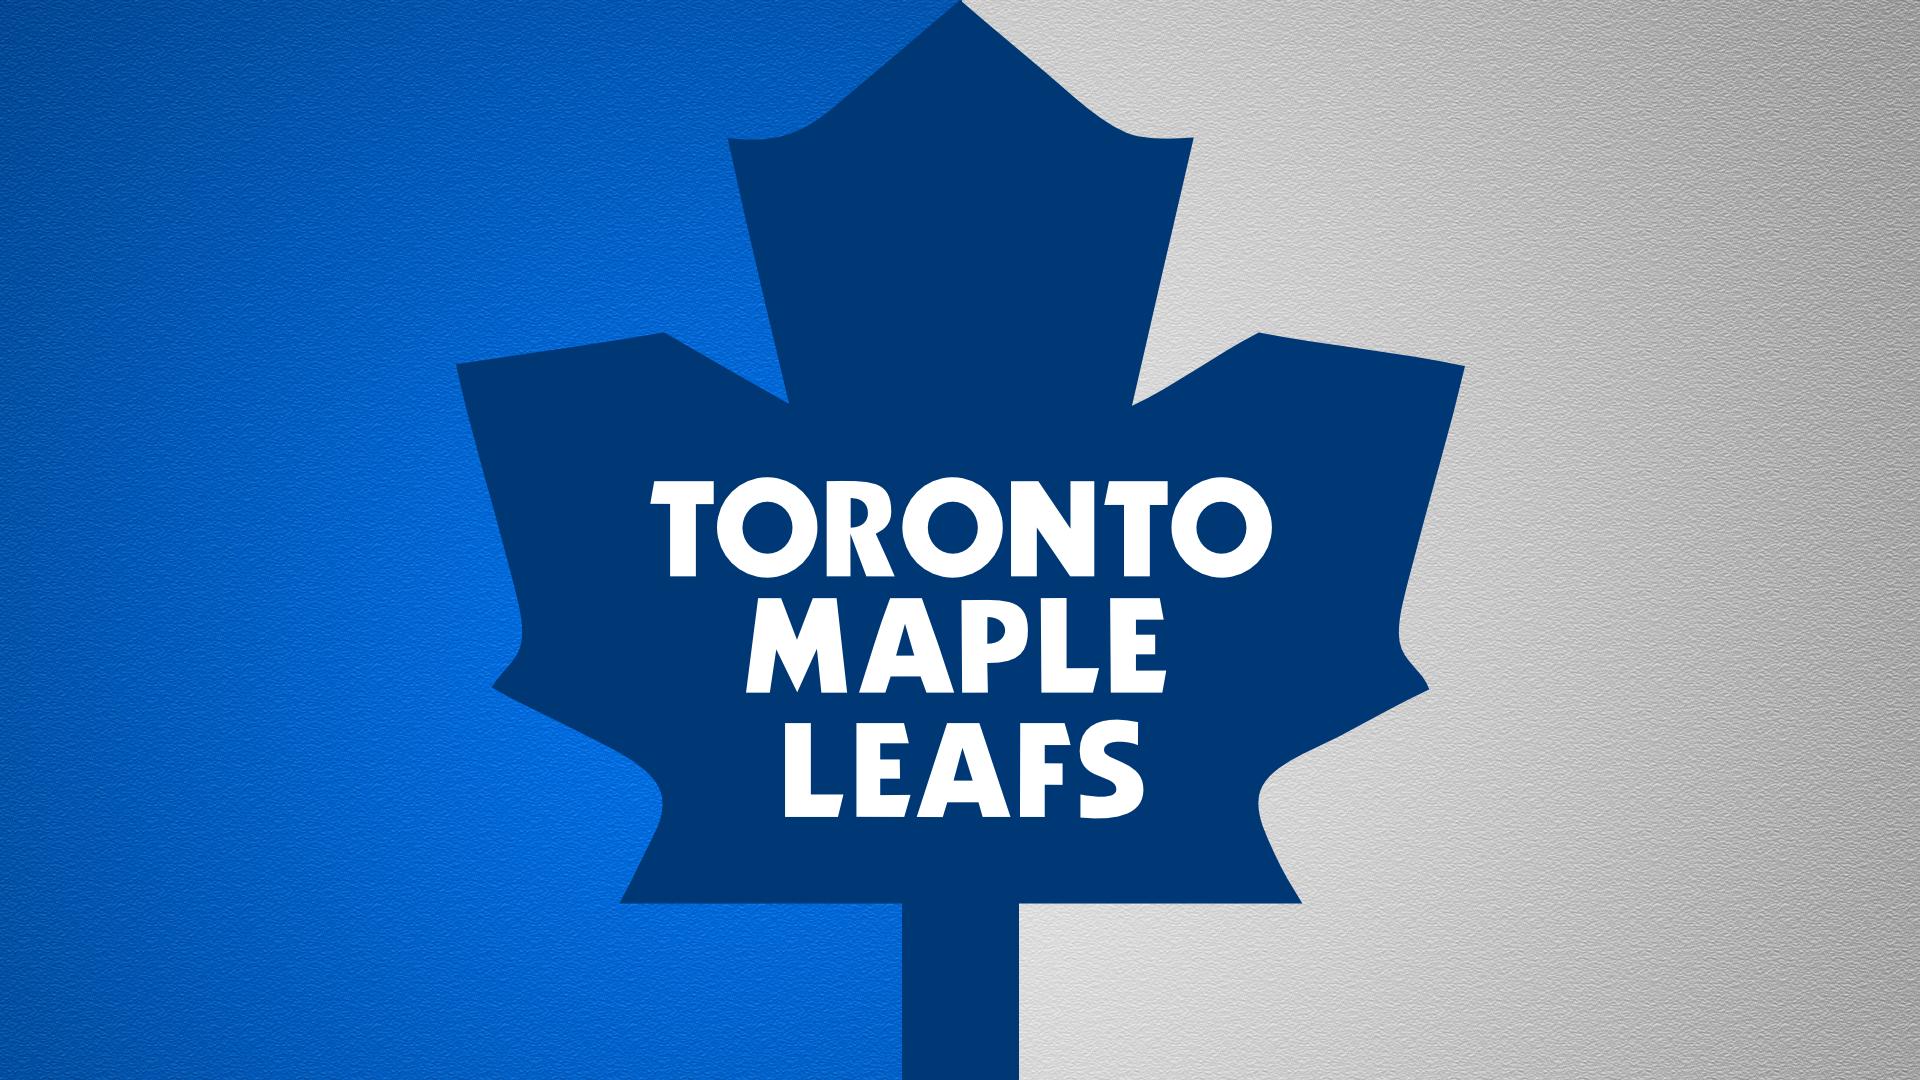 Enjoy this Toronto Maple Leafs background. Toronto Maple Leafs